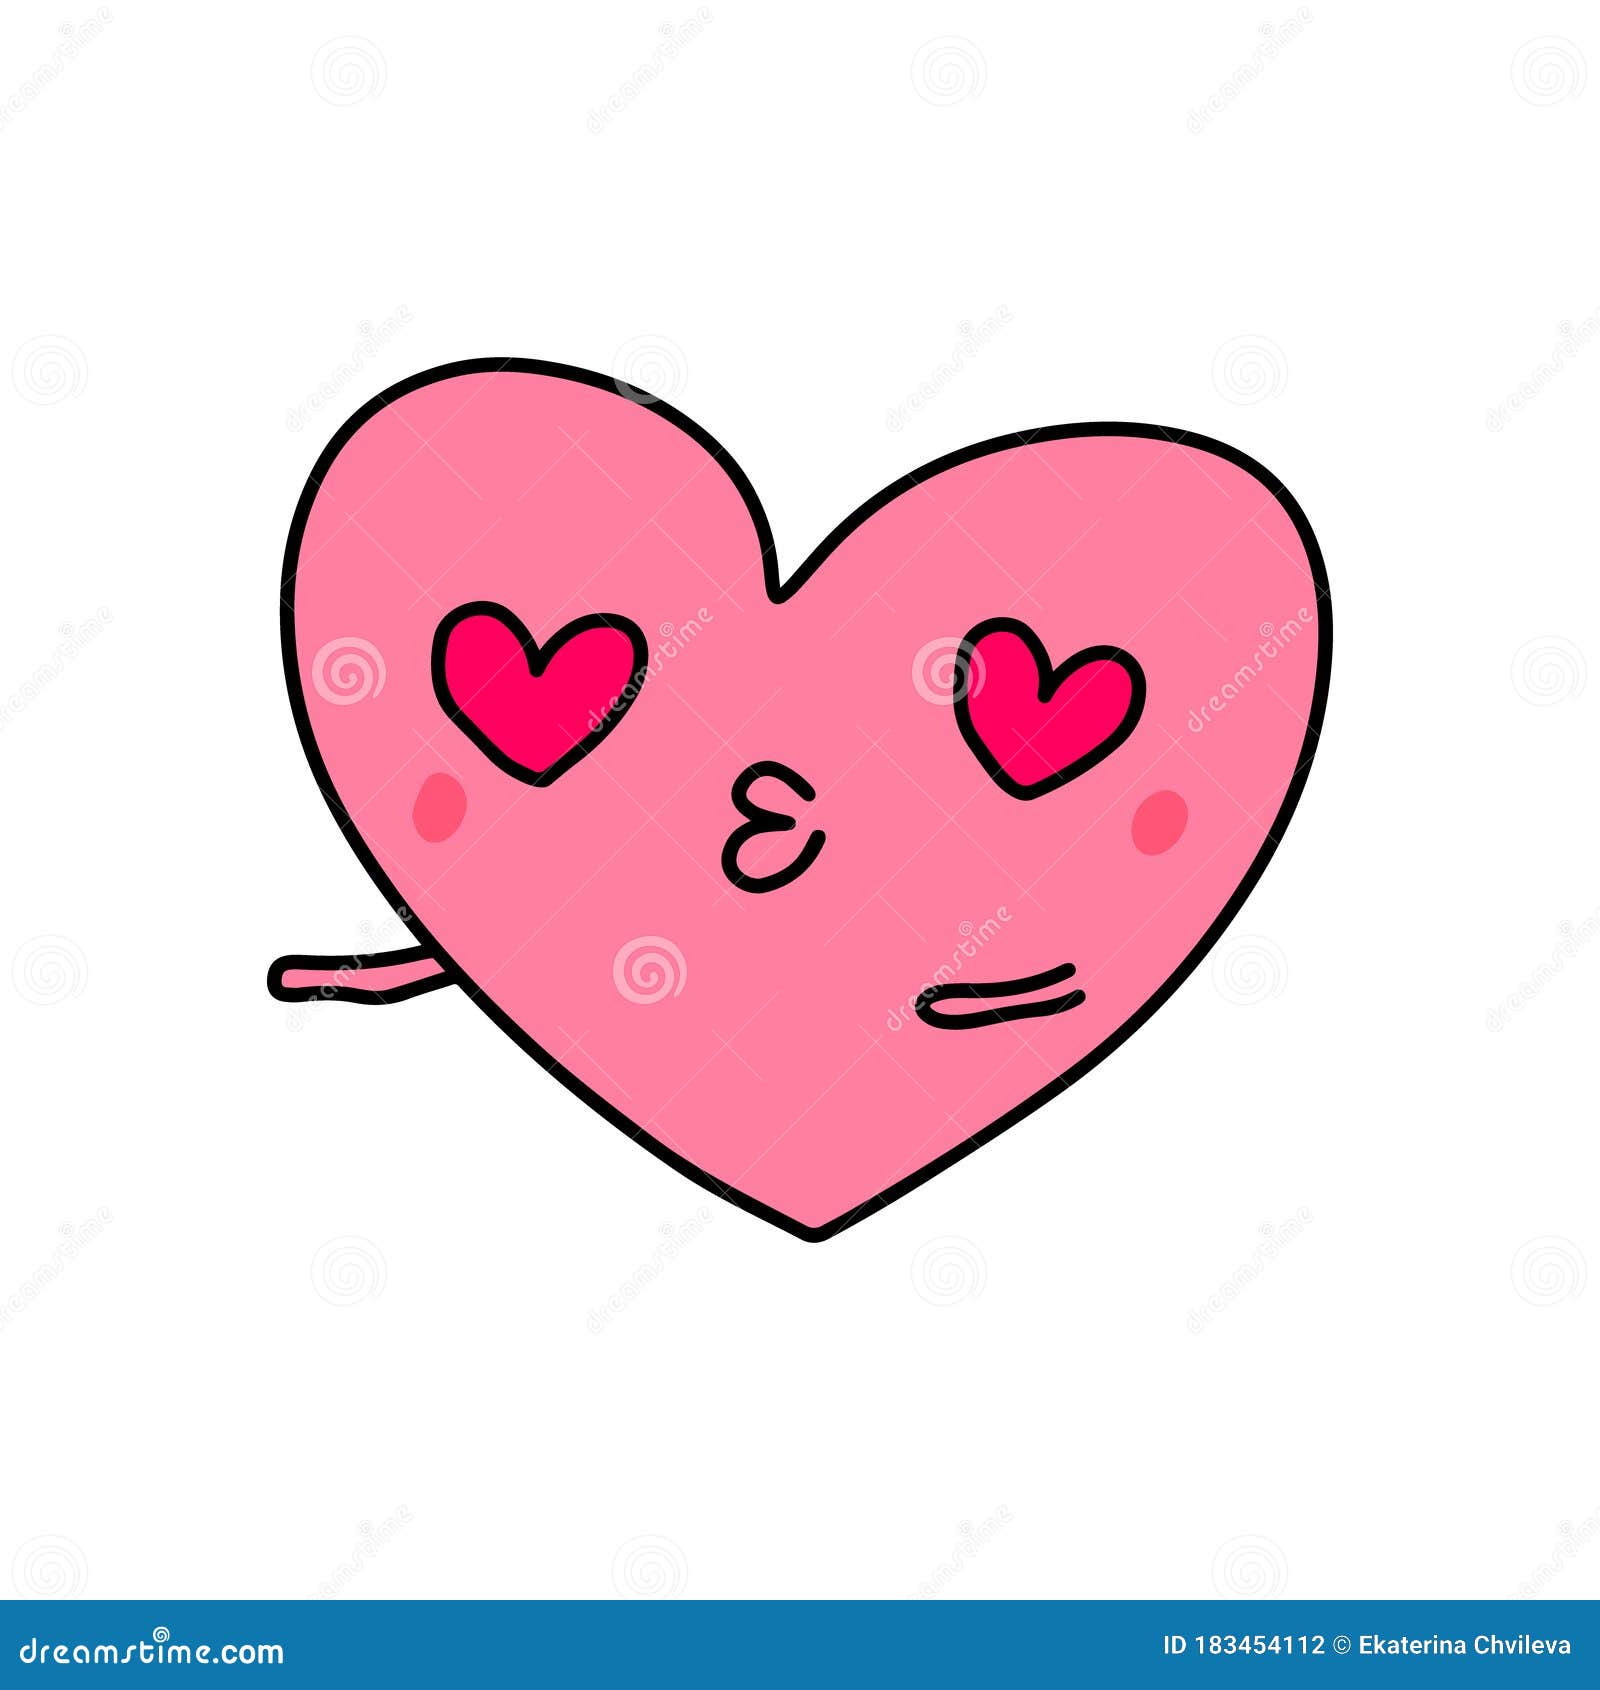 Símbolo Del Corazón De Amor Icono De Doodle Ilustración En El Cómic De  Dibujos Animados Kawaii Face Stock de ilustración - Ilustración de  vacaciones, valentinas: 183454112